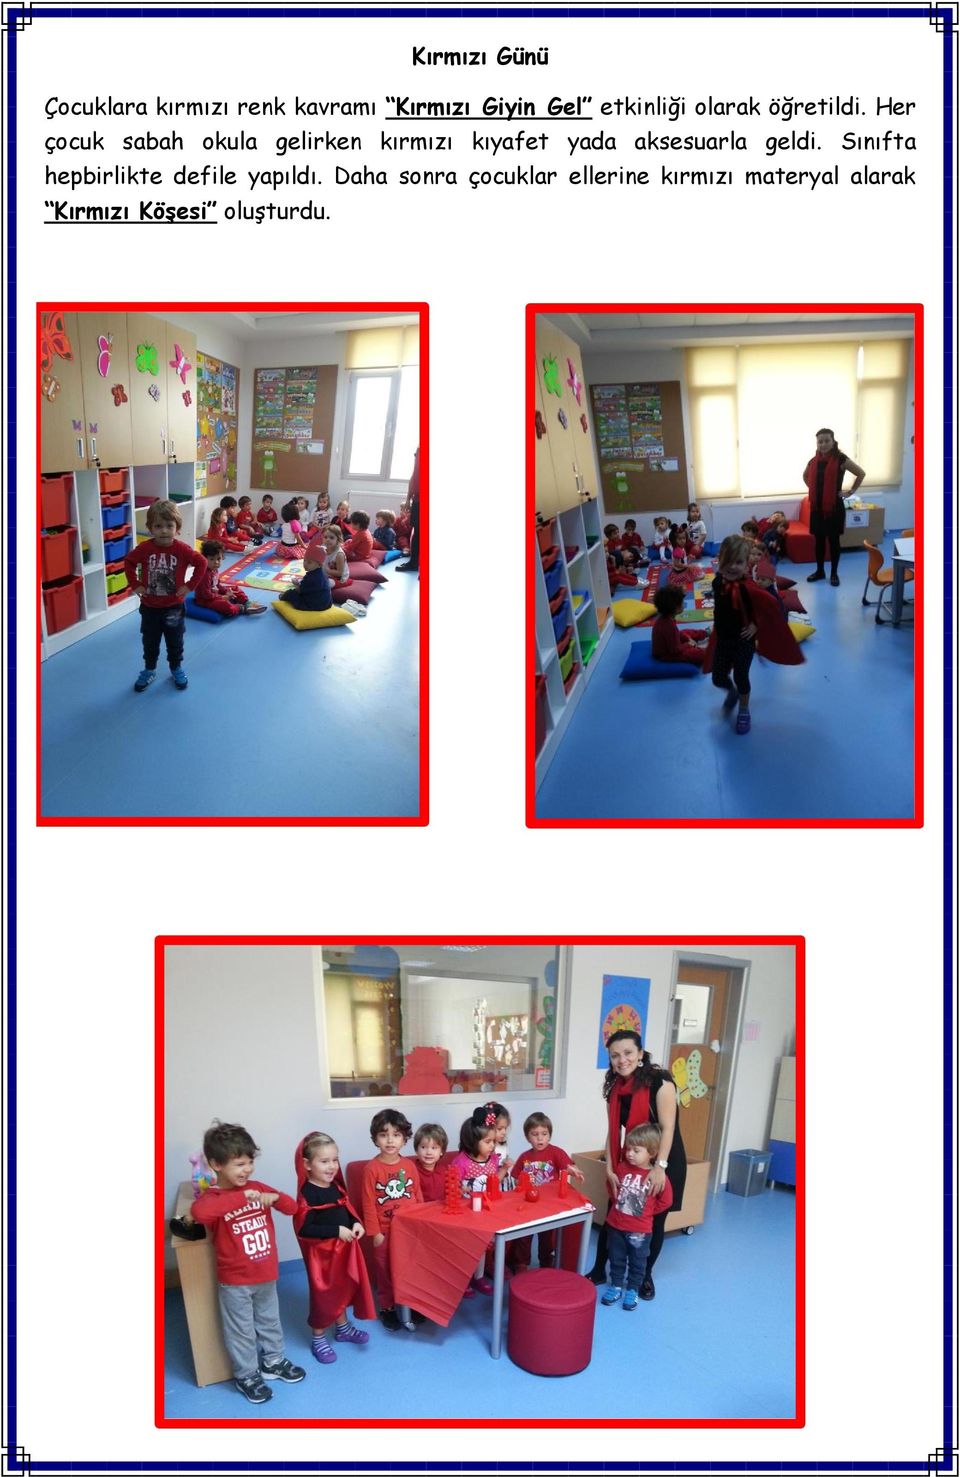 Her çocuk sabah okula gelirken kırmızı kıyafet yada aksesuarla geldi.